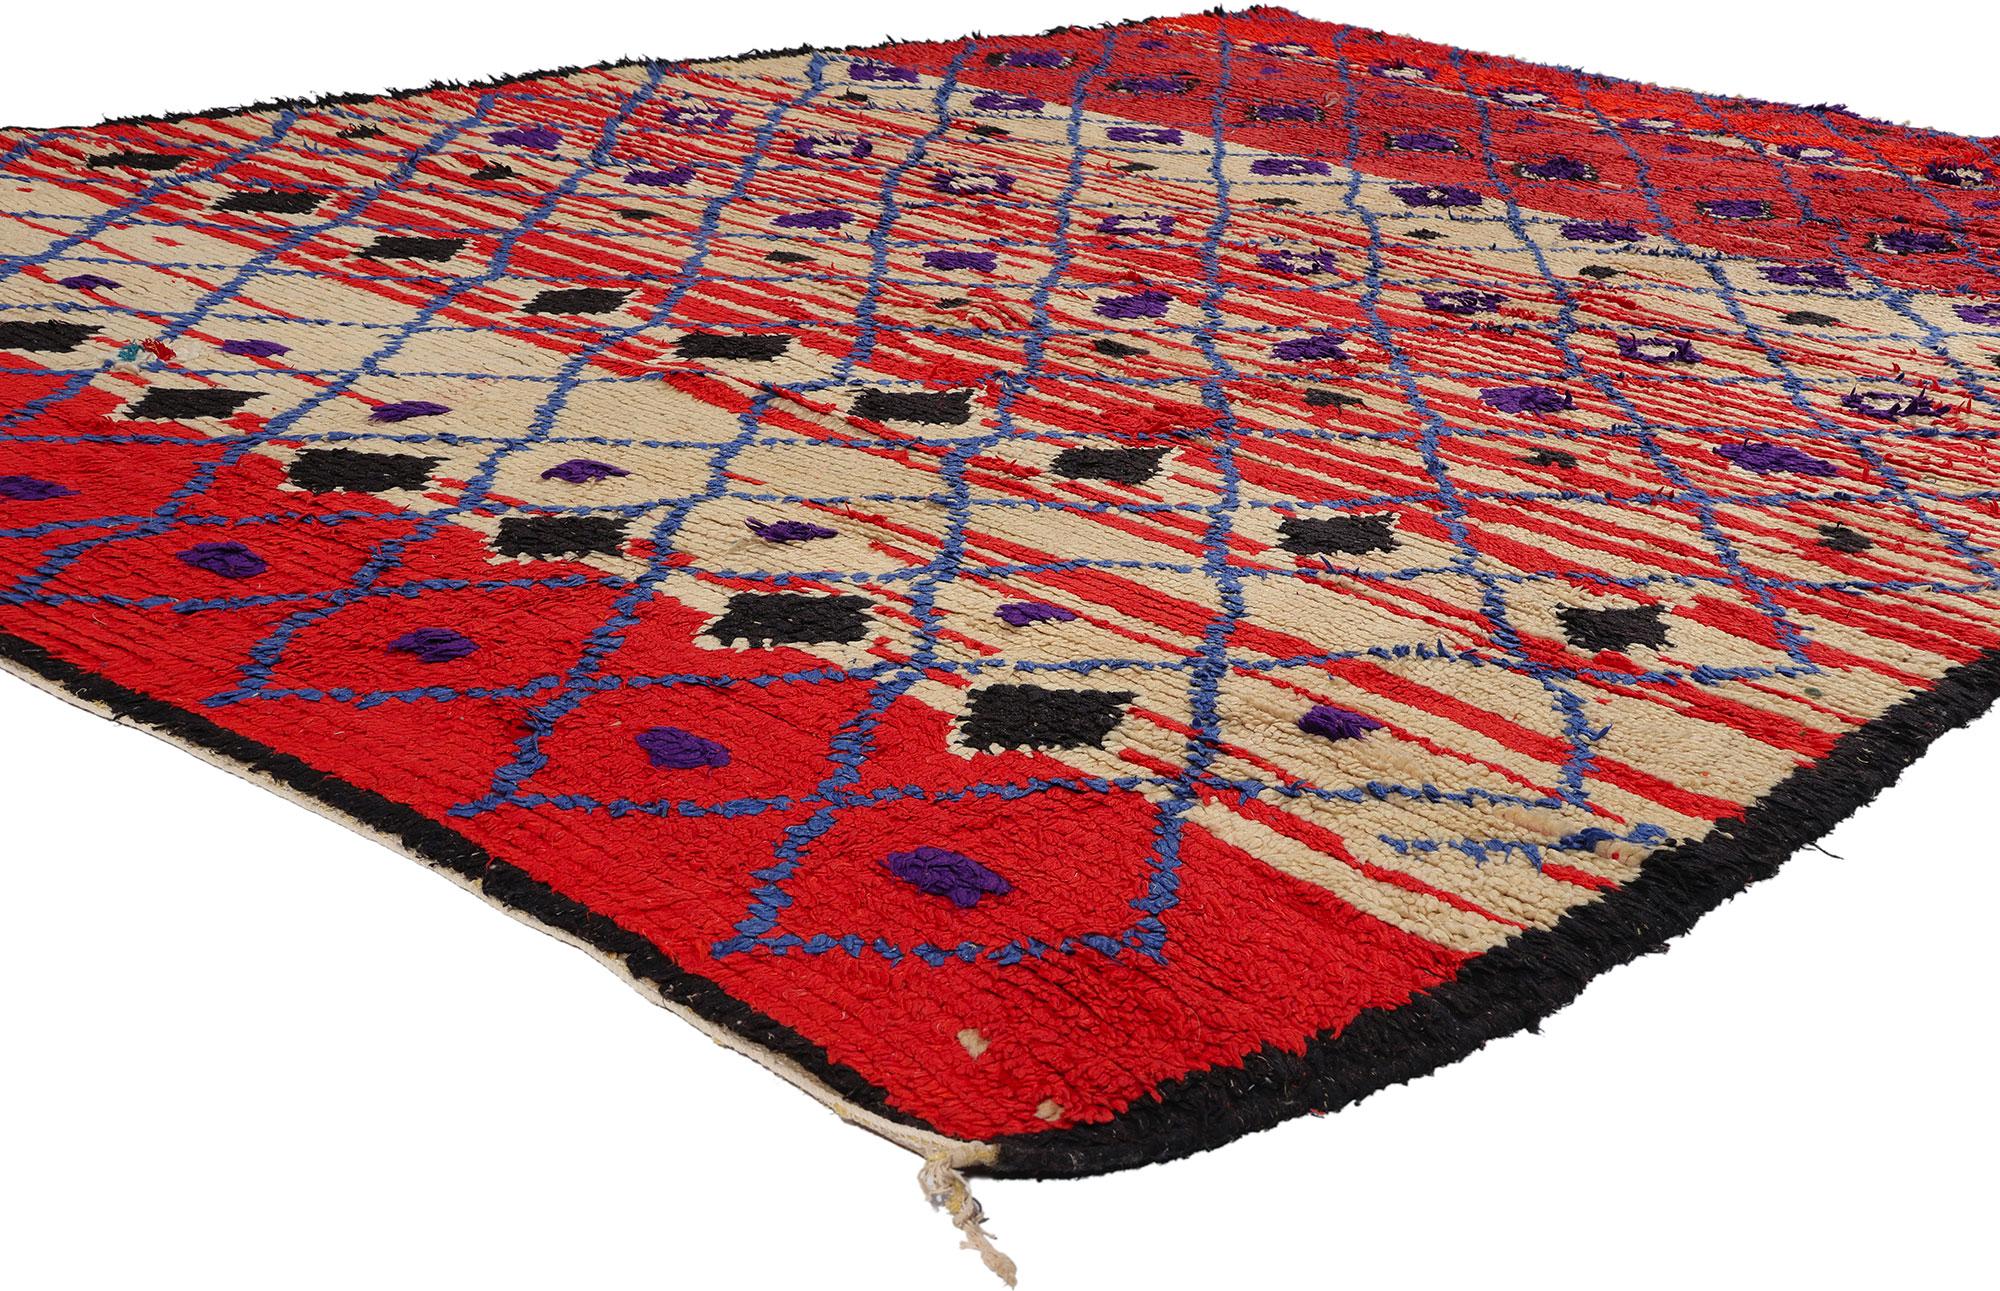 21771  Vintage Rot Marokkanisch Azilal Teppich, 07'01 x 10'04. Treten Sie ein in die fesselnde Welt der Azilal-Teppiche, in der jeder Strang eine Geschichte erzählt, die von geschickten Kunsthandwerkern inmitten der dynamischen Landschaften